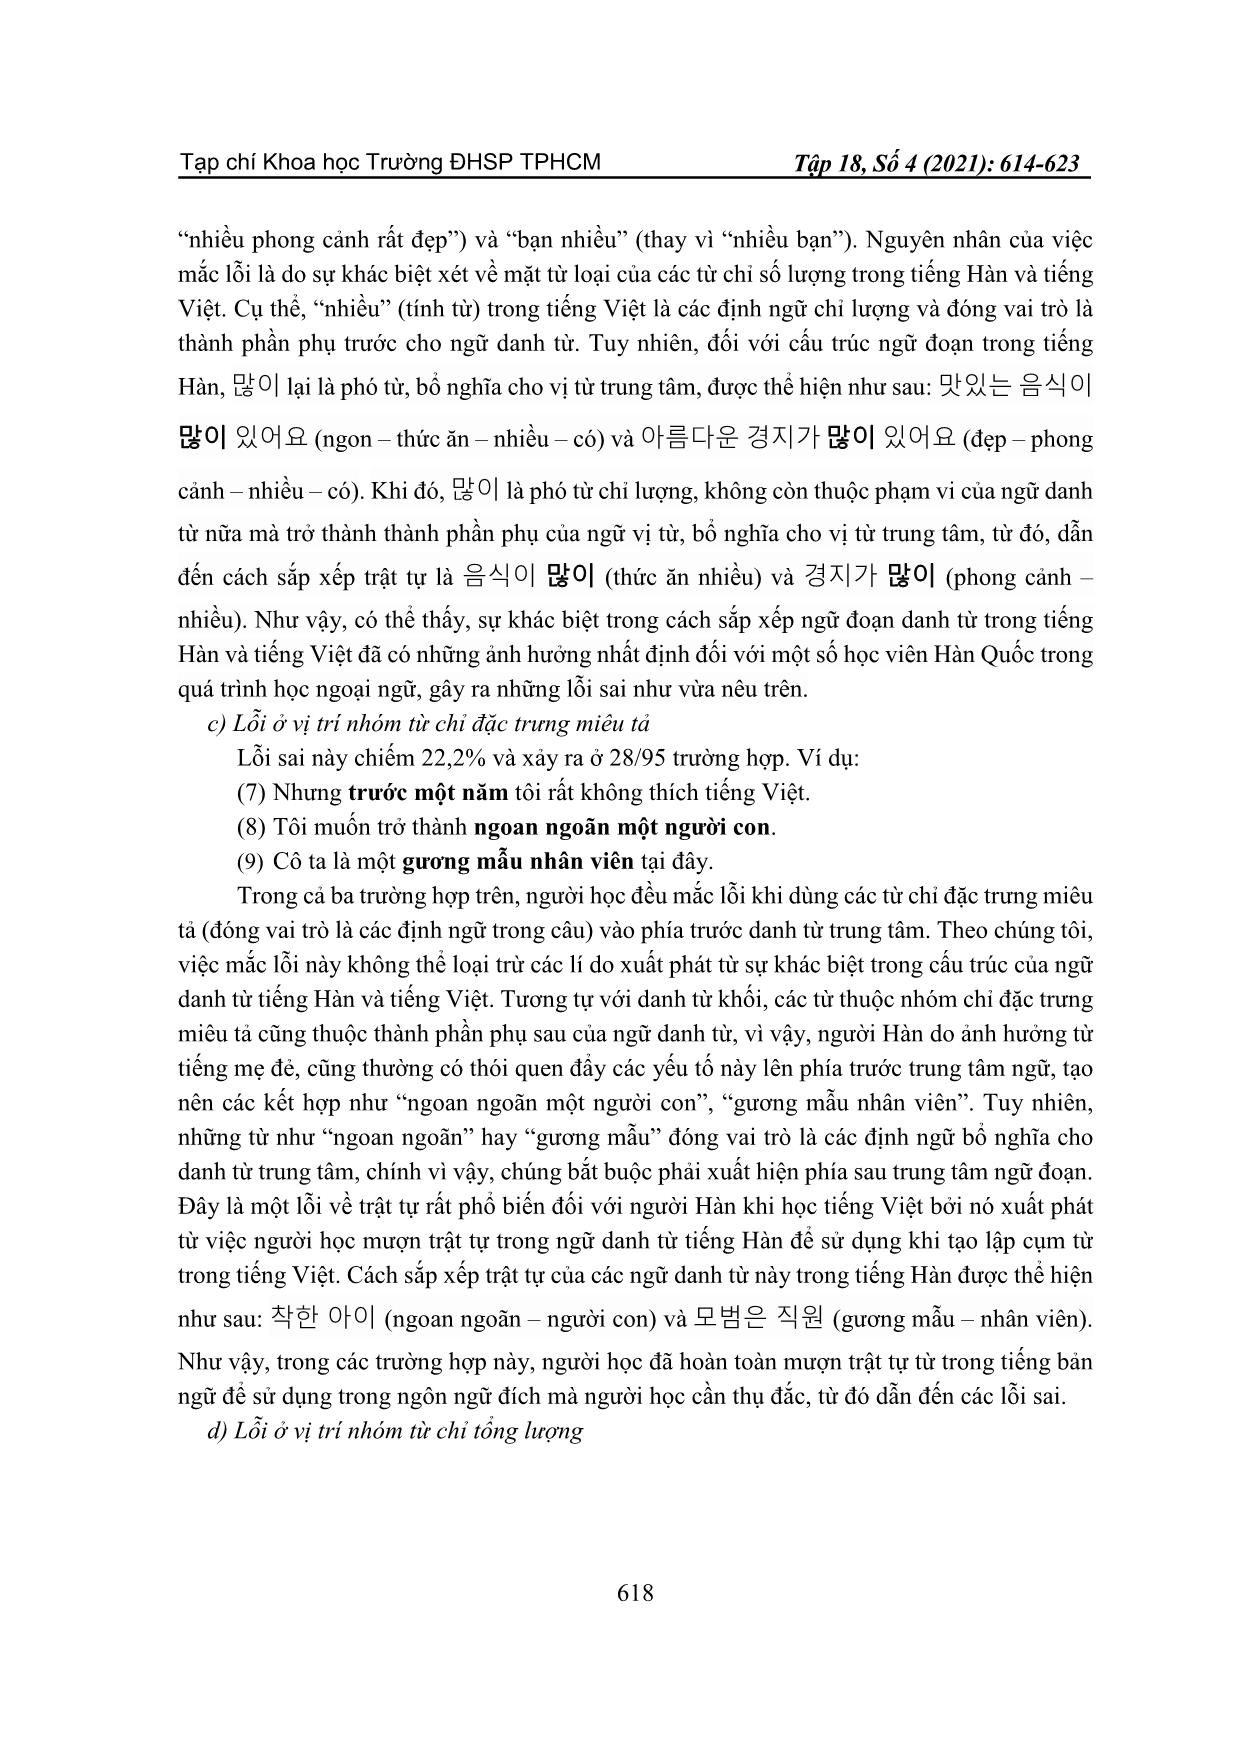 Lỗi sắp xếp trật tự trong ngữ đoạn danh từ của người Hàn quốc học Tiếng Việt trang 5